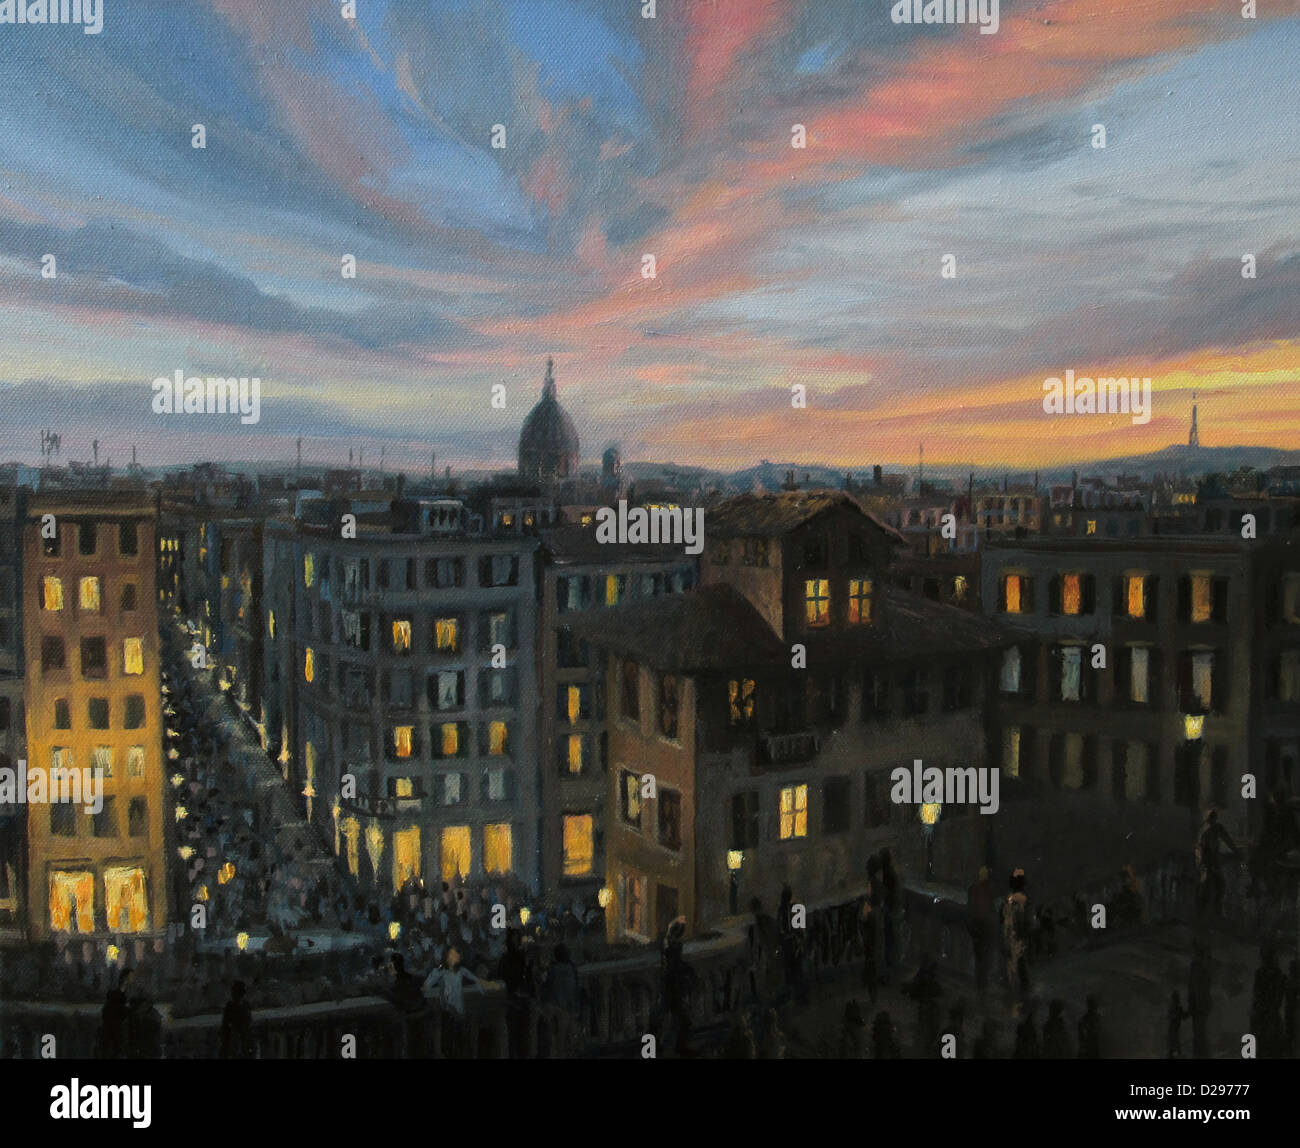 Un dipinto ad olio su tela di un colorato tramonto panoramico vista della capitale d'Italia, Roma dalla sommità della Scalinata di piazza di Spagna. Foto Stock